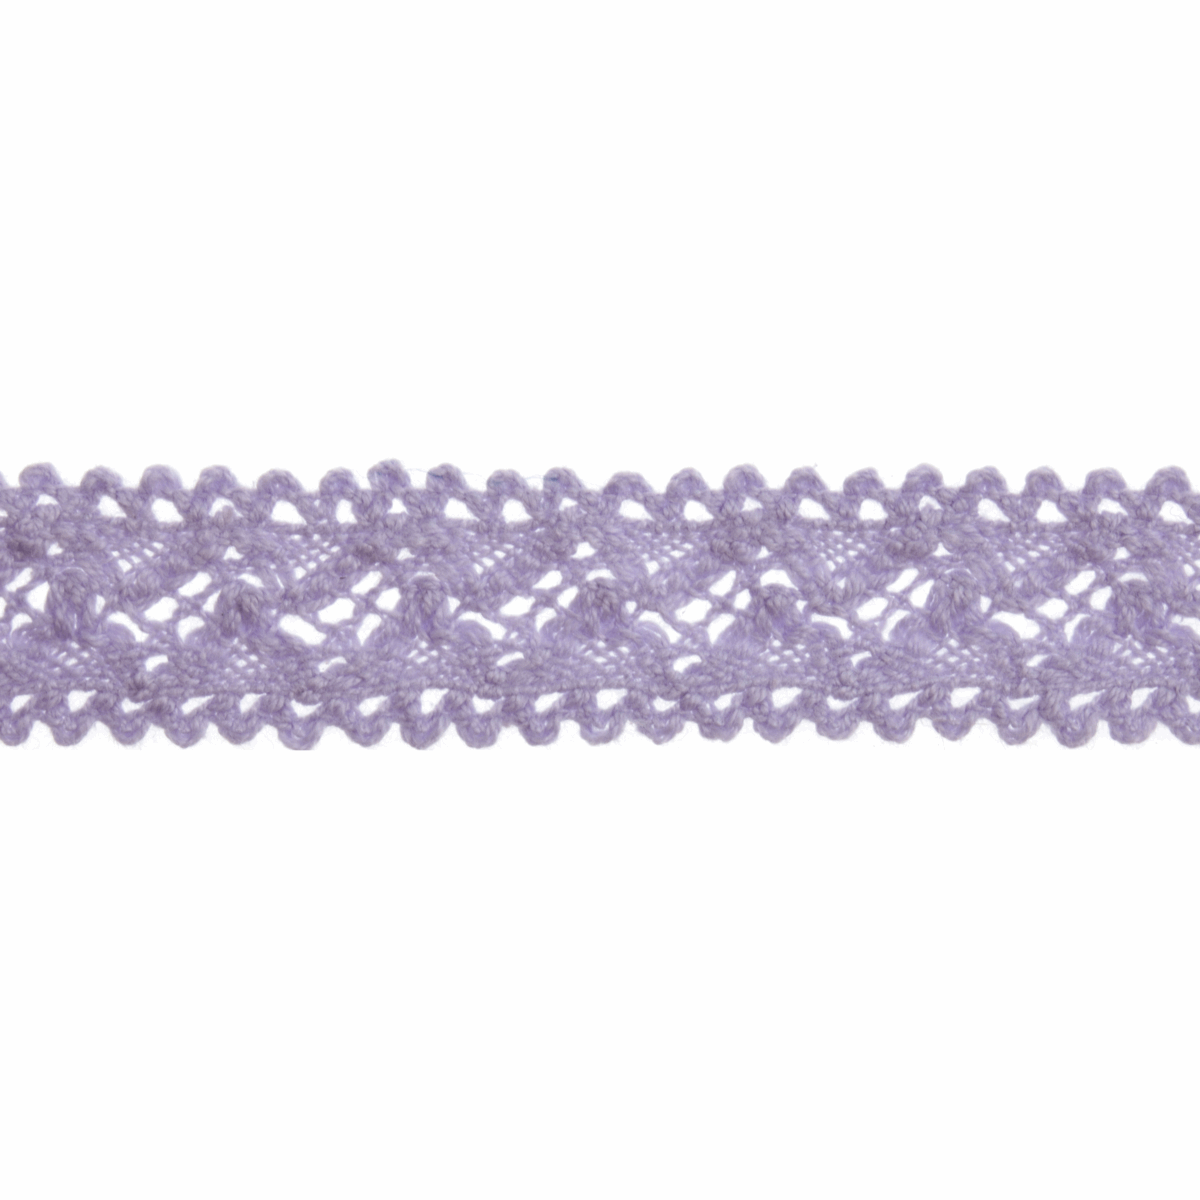 Bowtique Lilac Cotton Lace Trimming - 4m x 18mm